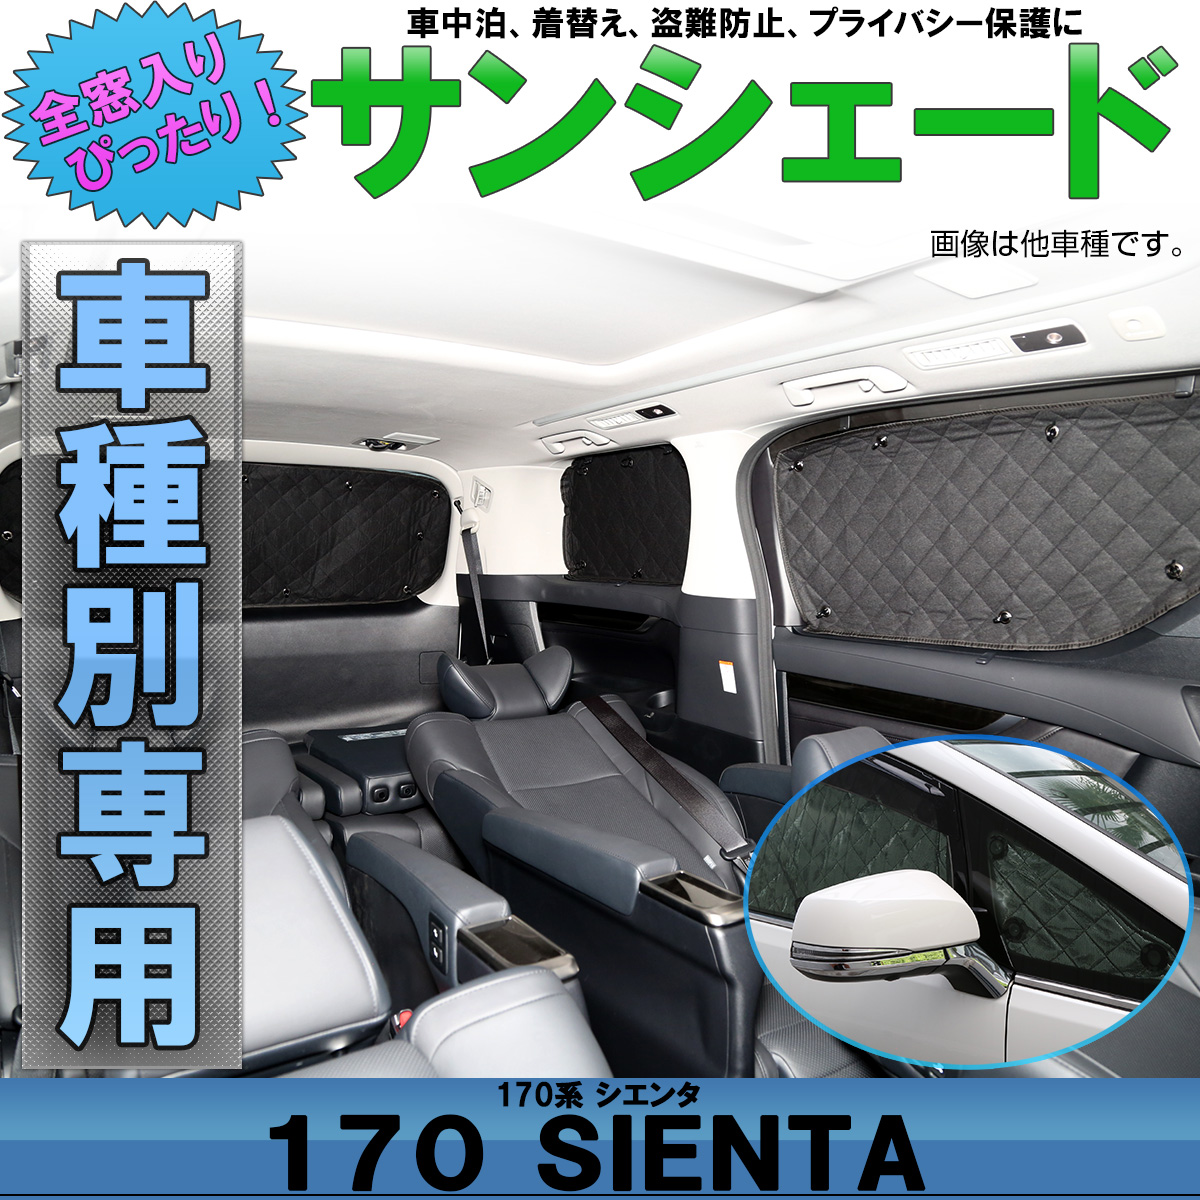 トヨタ 170系 シエンタ 専用設計 サンシェード 全窓用セット 5層構造 ブラックメッシュ 車中泊 プライバシー保護 S 647